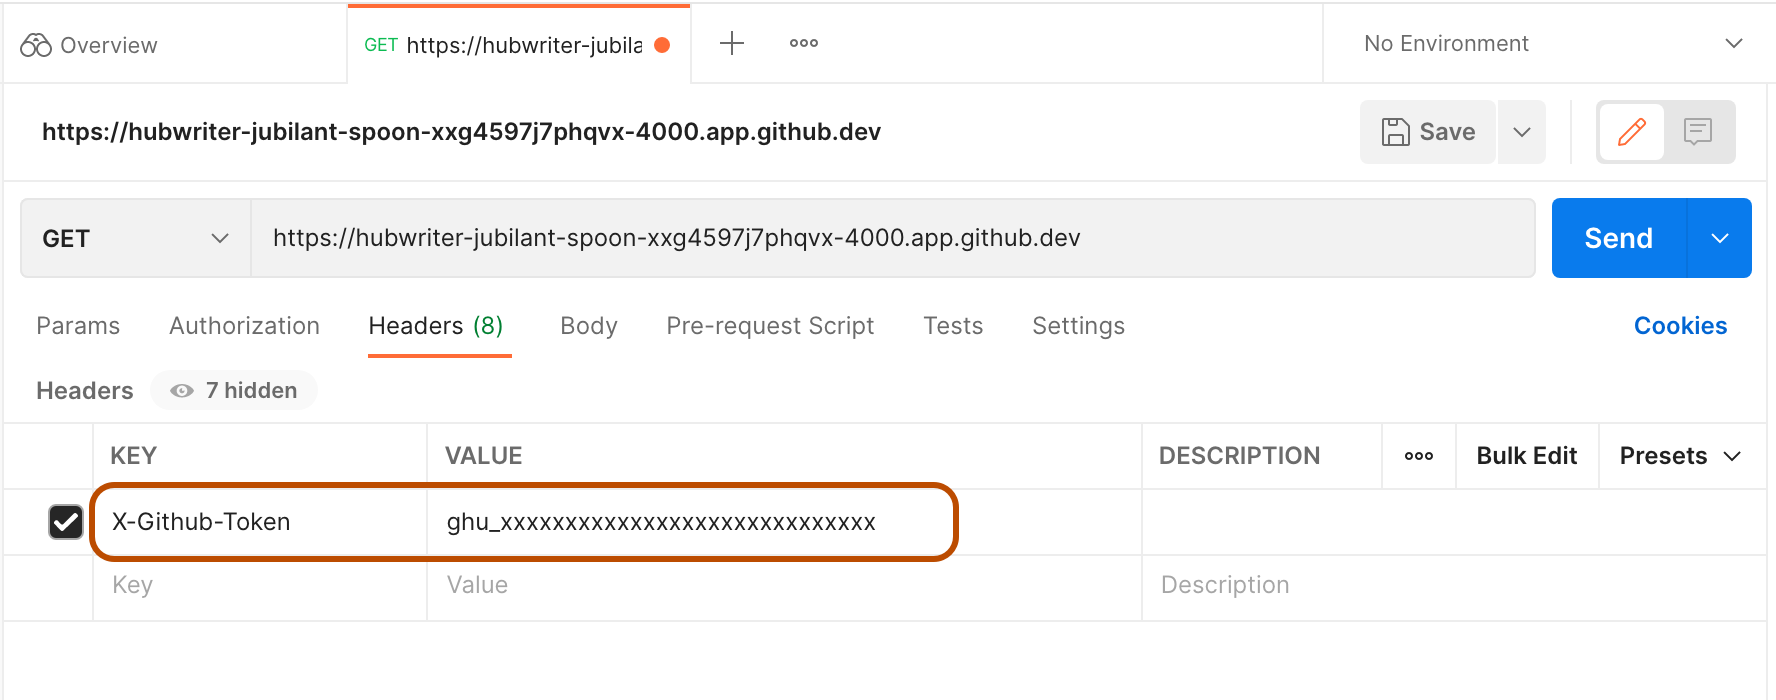 Capture d’écran d’un GITHUB_TOKEN factice, collé dans Postman comme valeur de la clé X-GitHub-Token. La clé et la valeur sont mises en évidence.